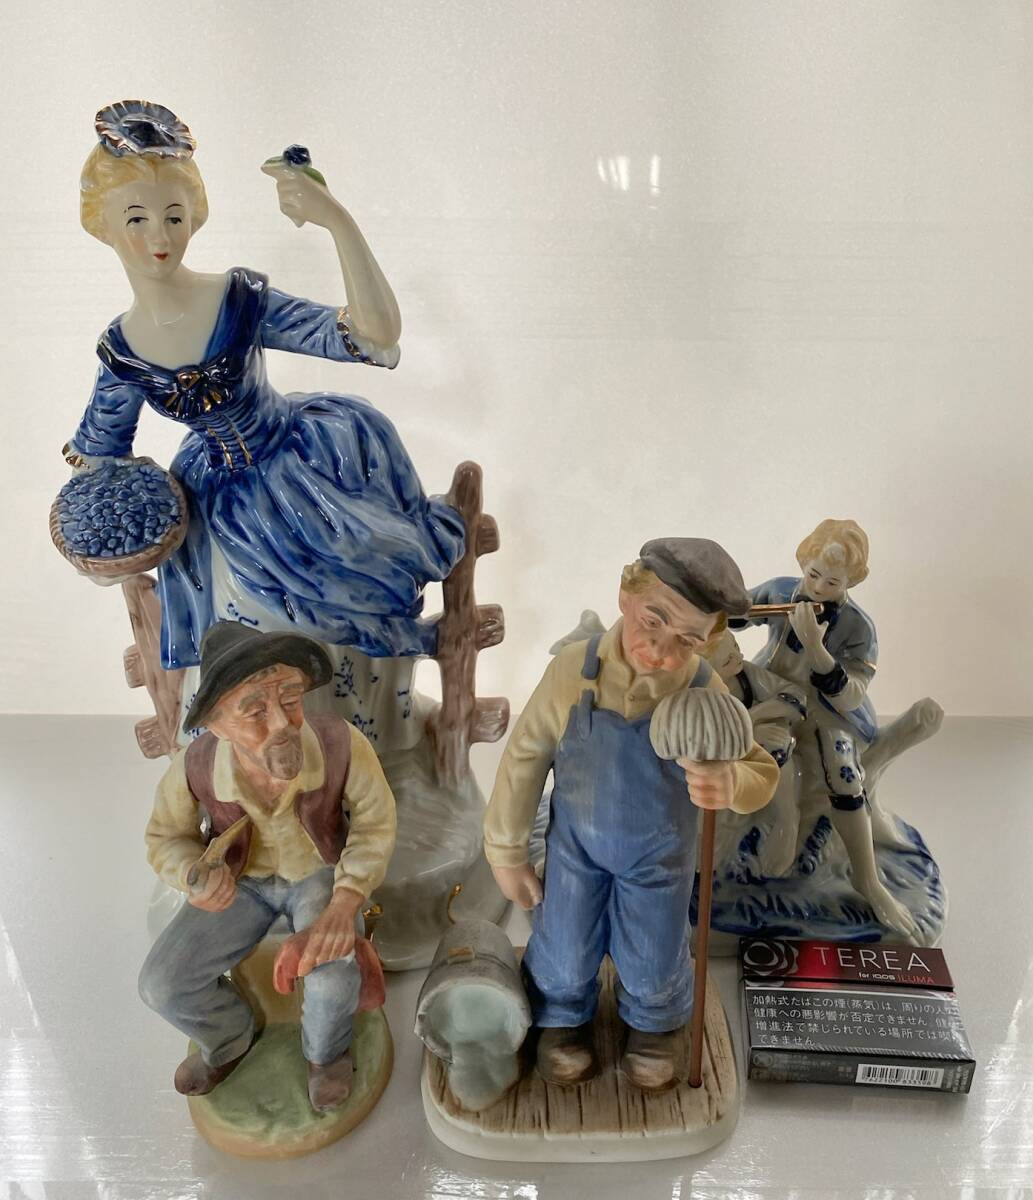  запад керамика кукла * украшение 4 осмотр : античный интерьер керамика Vintage в европейком стиле 